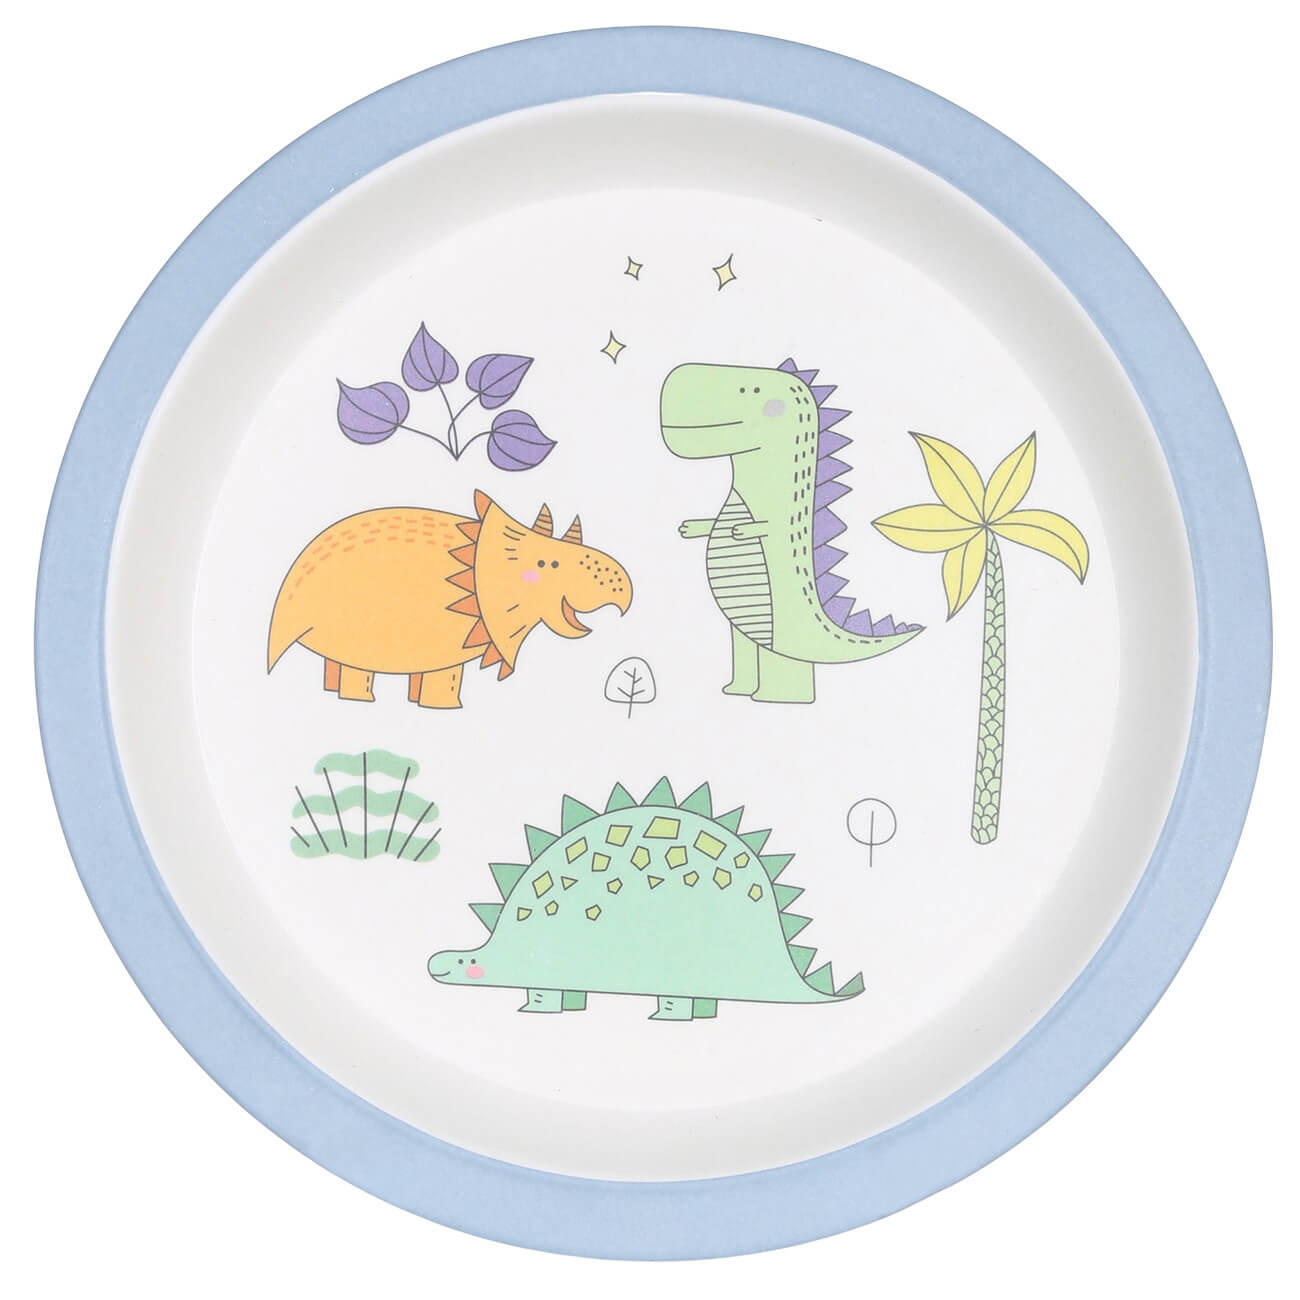 Тарелка закусочная, детская, 21 см, бамбук, голубая, Динозавр, Dino тарелка закусочная детская 21 см бамбук голубая динозавр dino